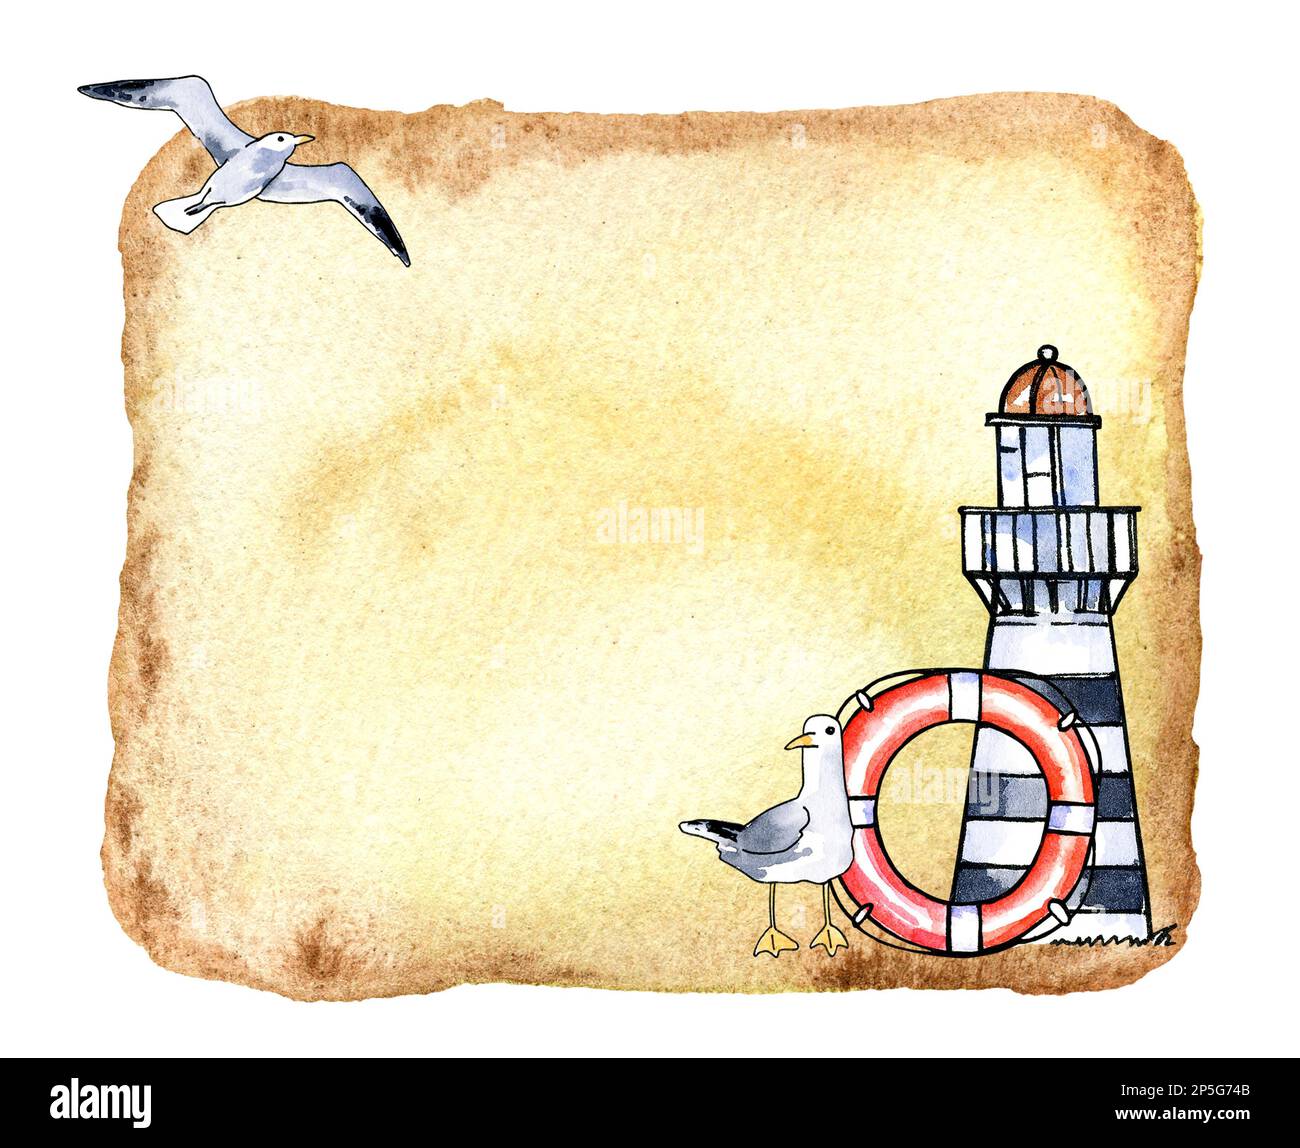 Bordure aquarelle texturée avec câble, phare, oiseau de mer et nœud sur le vieux papier. Illustration aquarelle. Dessiner à la main l'esquisse. Thème marin Banque D'Images